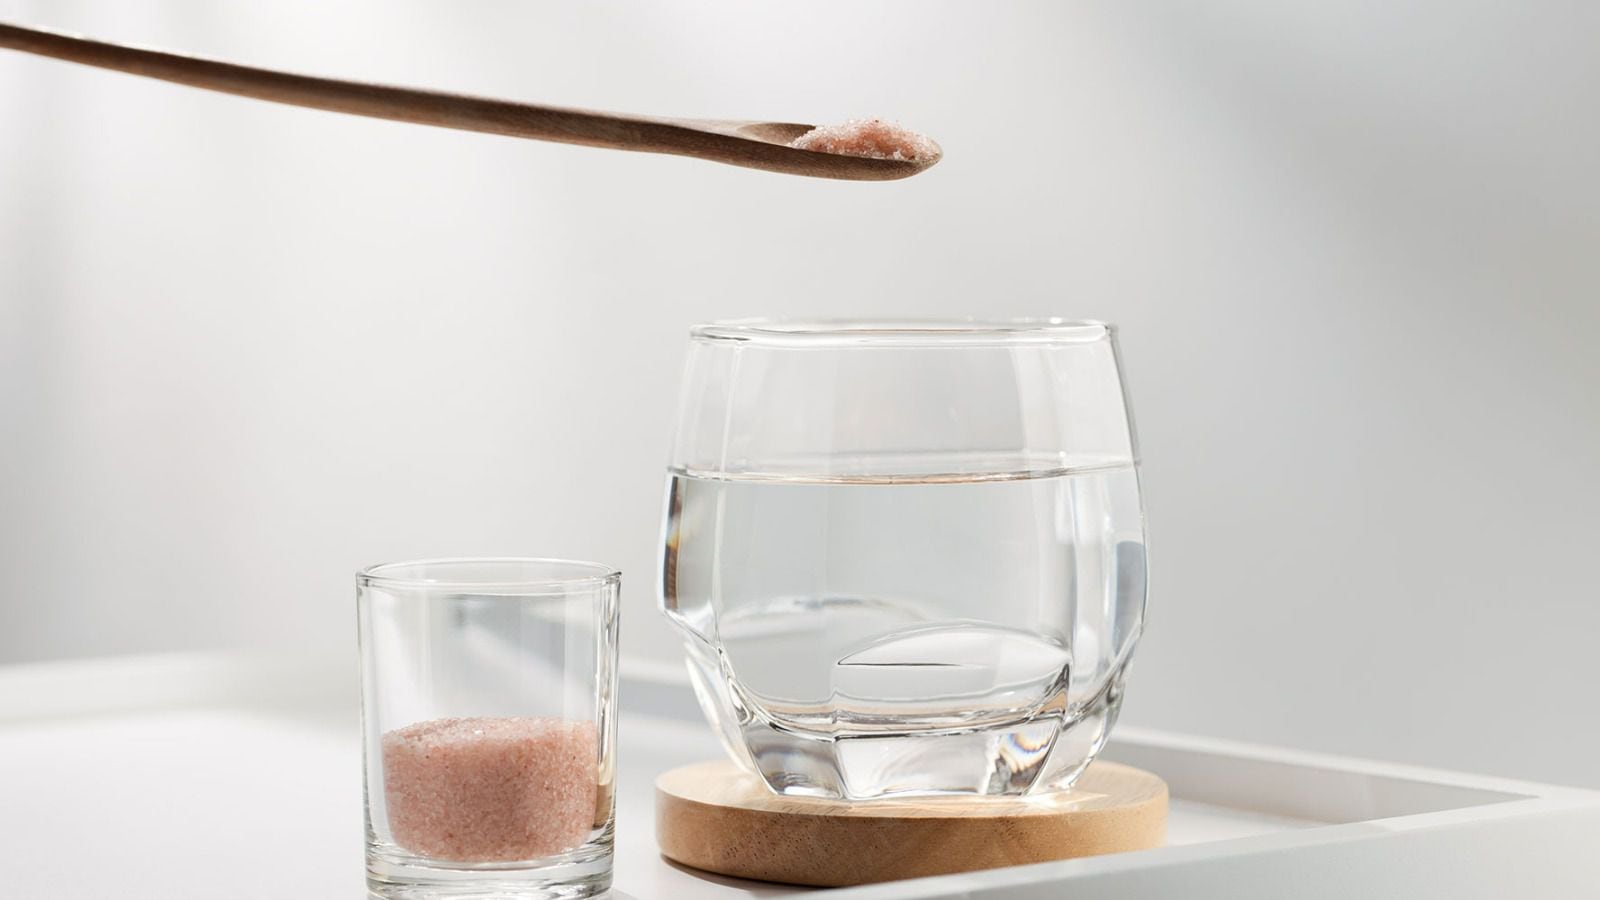 El agua con sal del Himalaya se ha popularizado como bebida sana, aunque no se han probado sus supuestos beneficios. (Foto: Shutterstock).